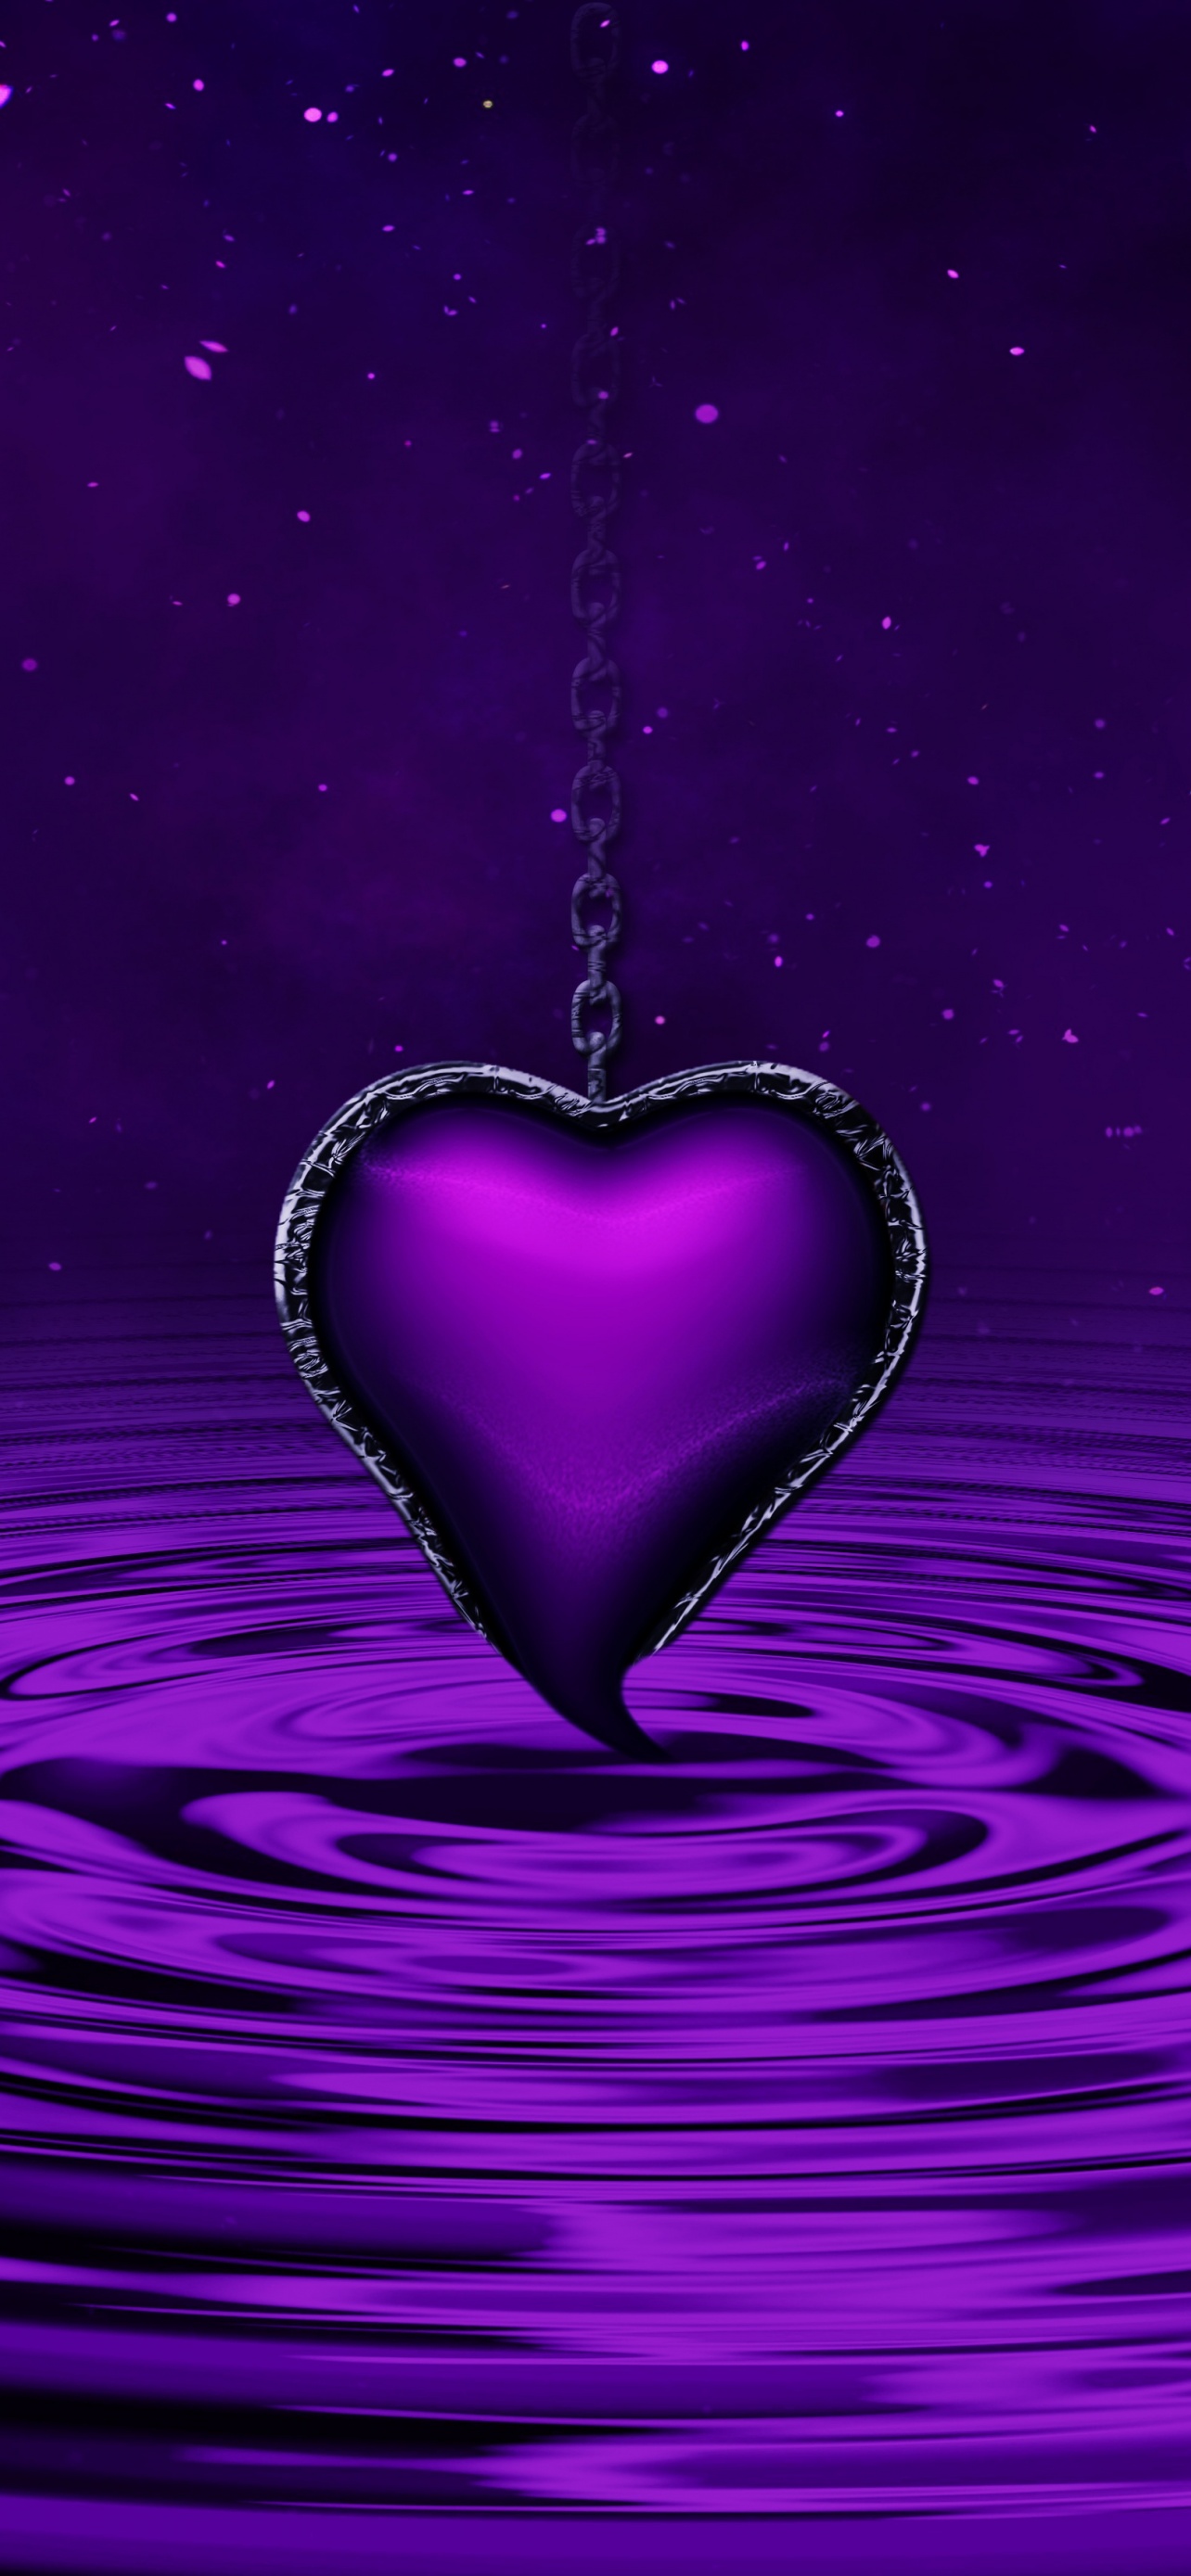 Hãy khám phá hình nền Purple Heart đầy lãng mạn cho điện thoại của bạn. Được thiết kế độc đáo với màu tím đậm thể hiện tình yêu, sự trân trọng và lòng trắc ẩn.